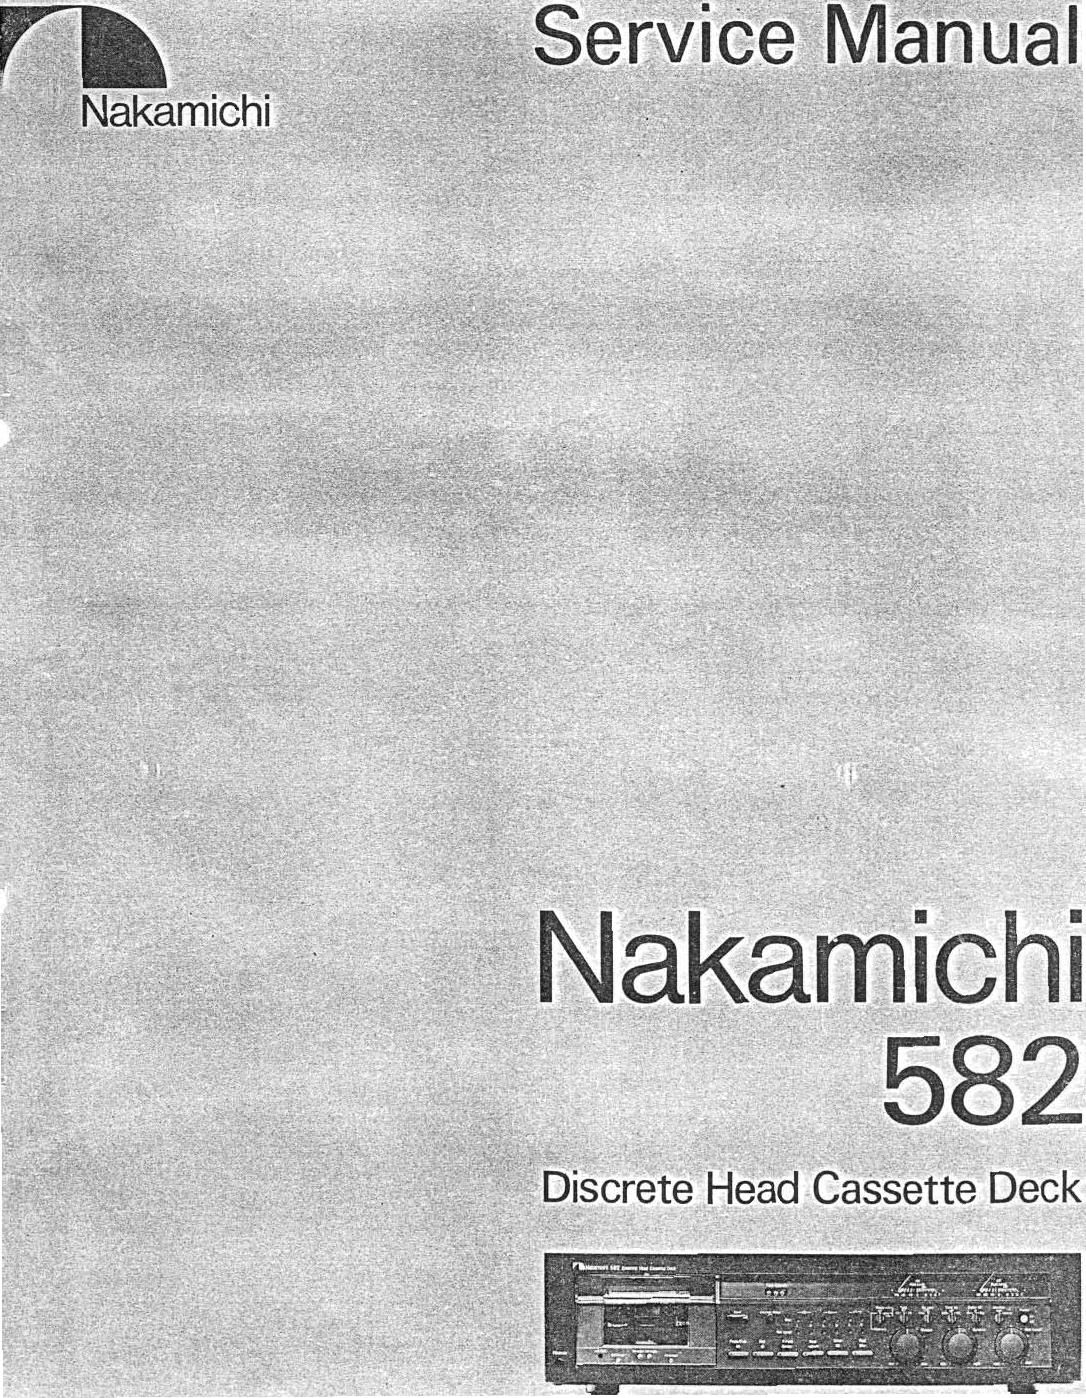 Nakamichi 582 Service Manual